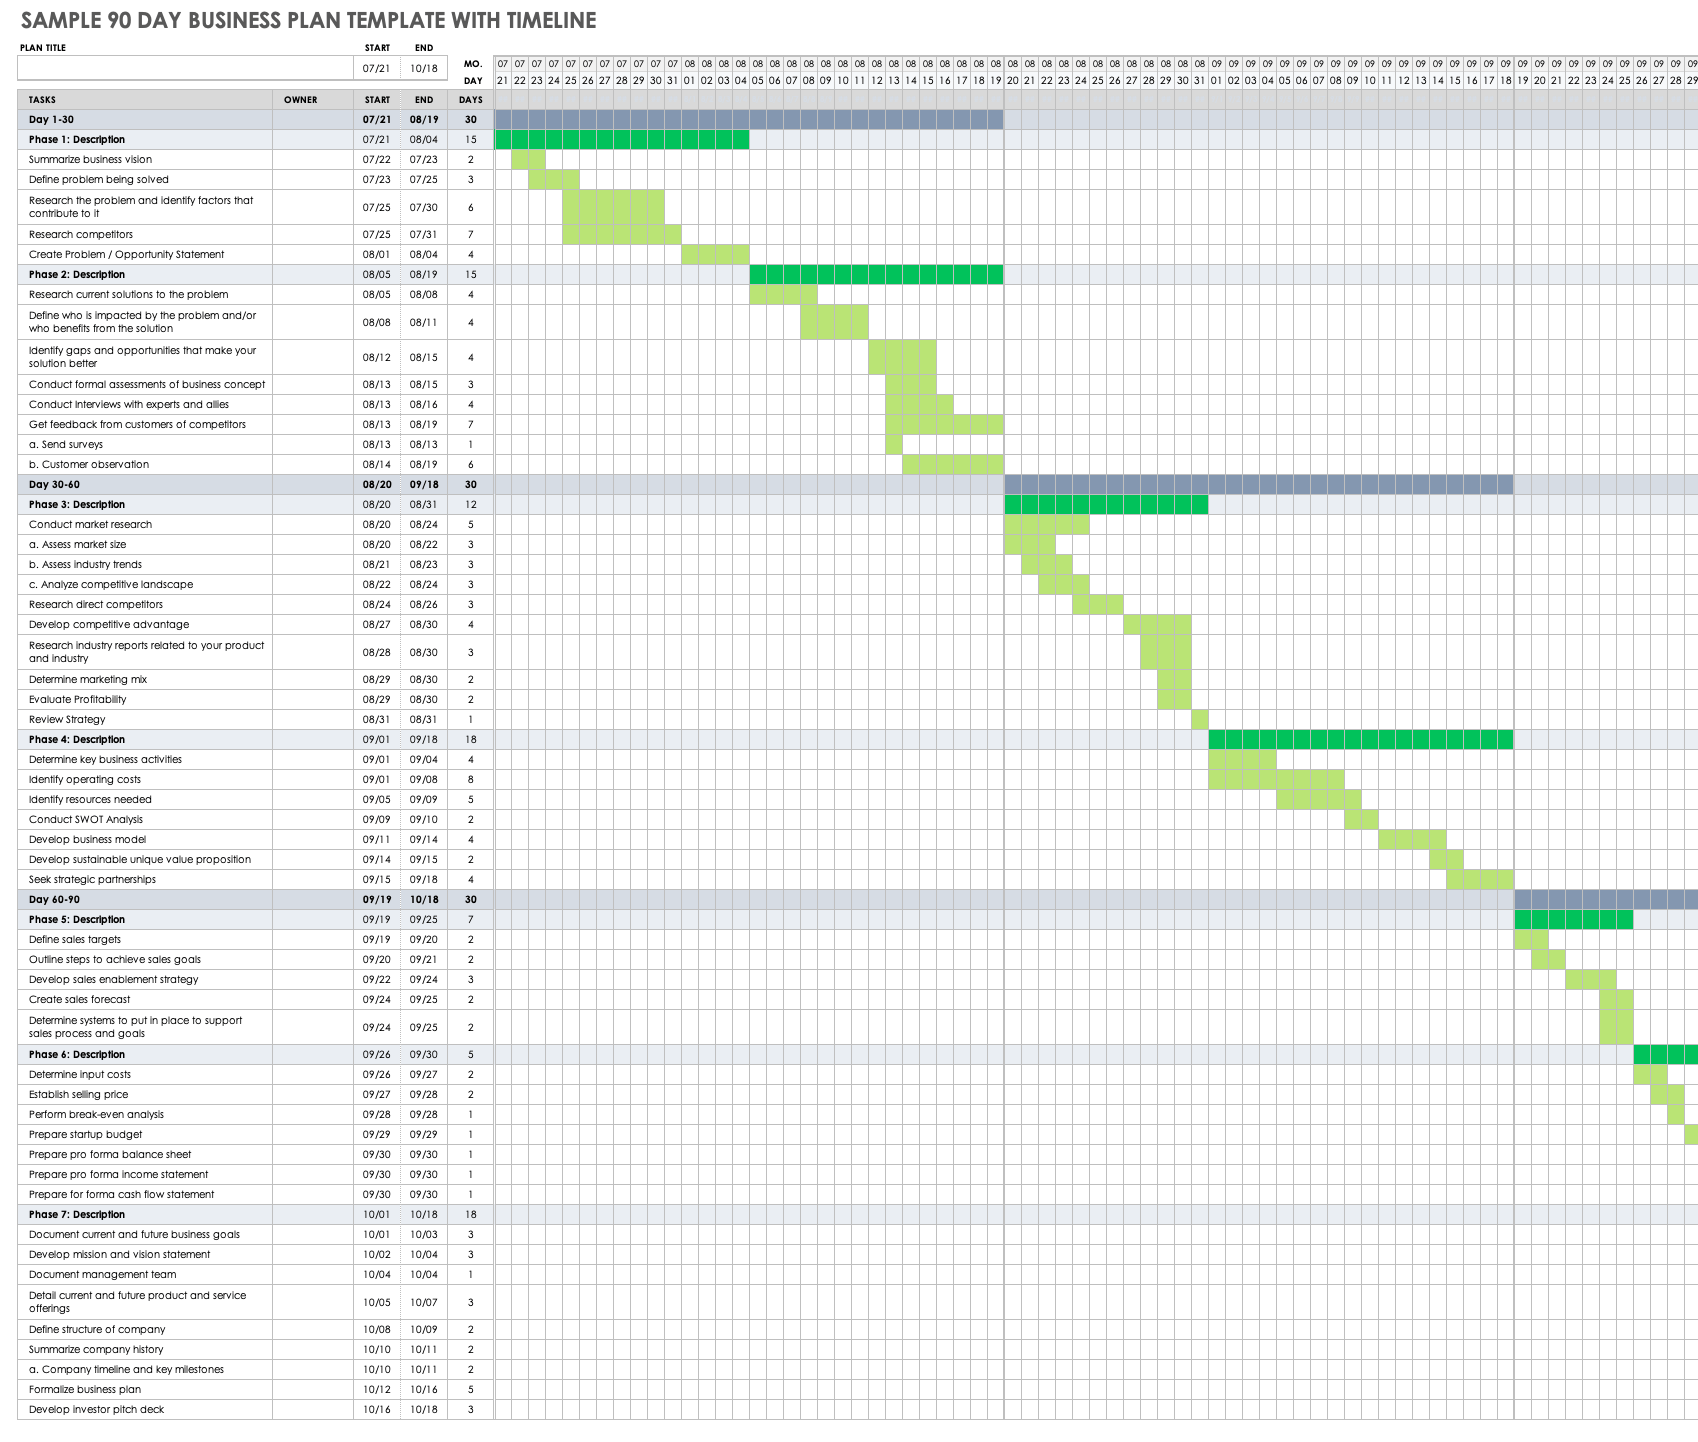 样本90天商业计划模板与时间表